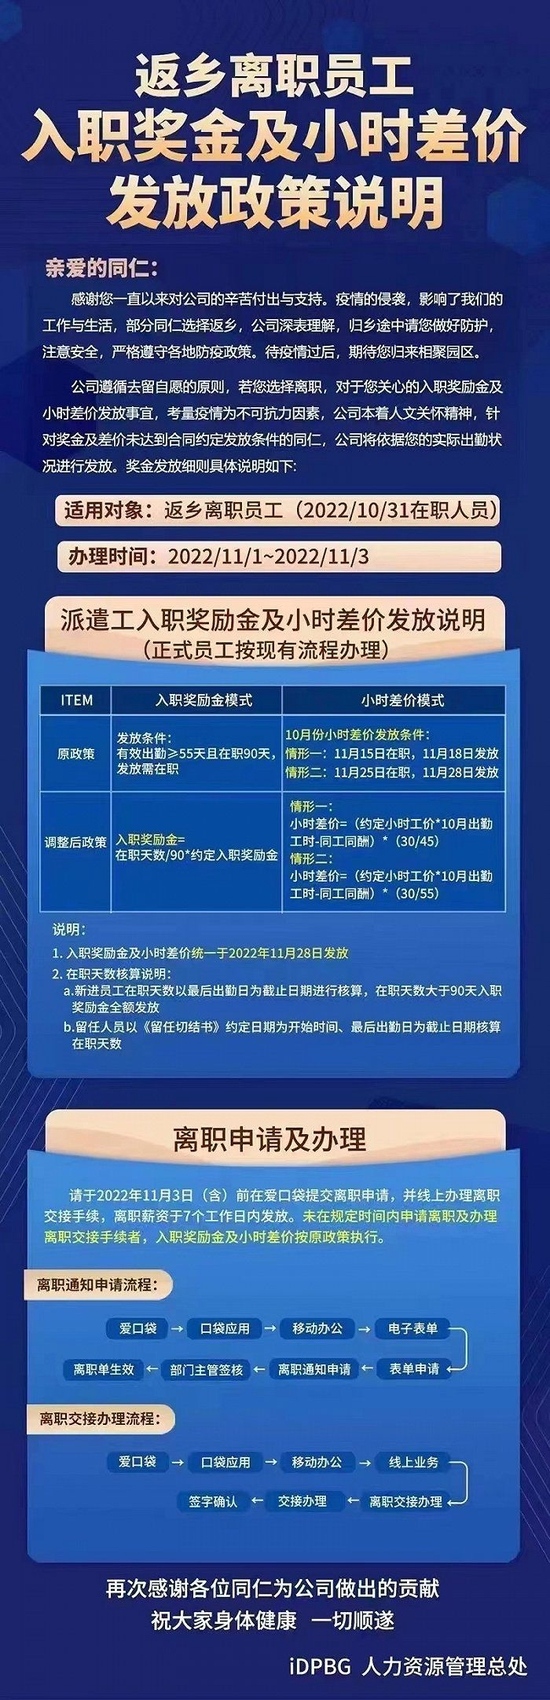 郑州富士康部分厂区发布返乡人员奖金新政